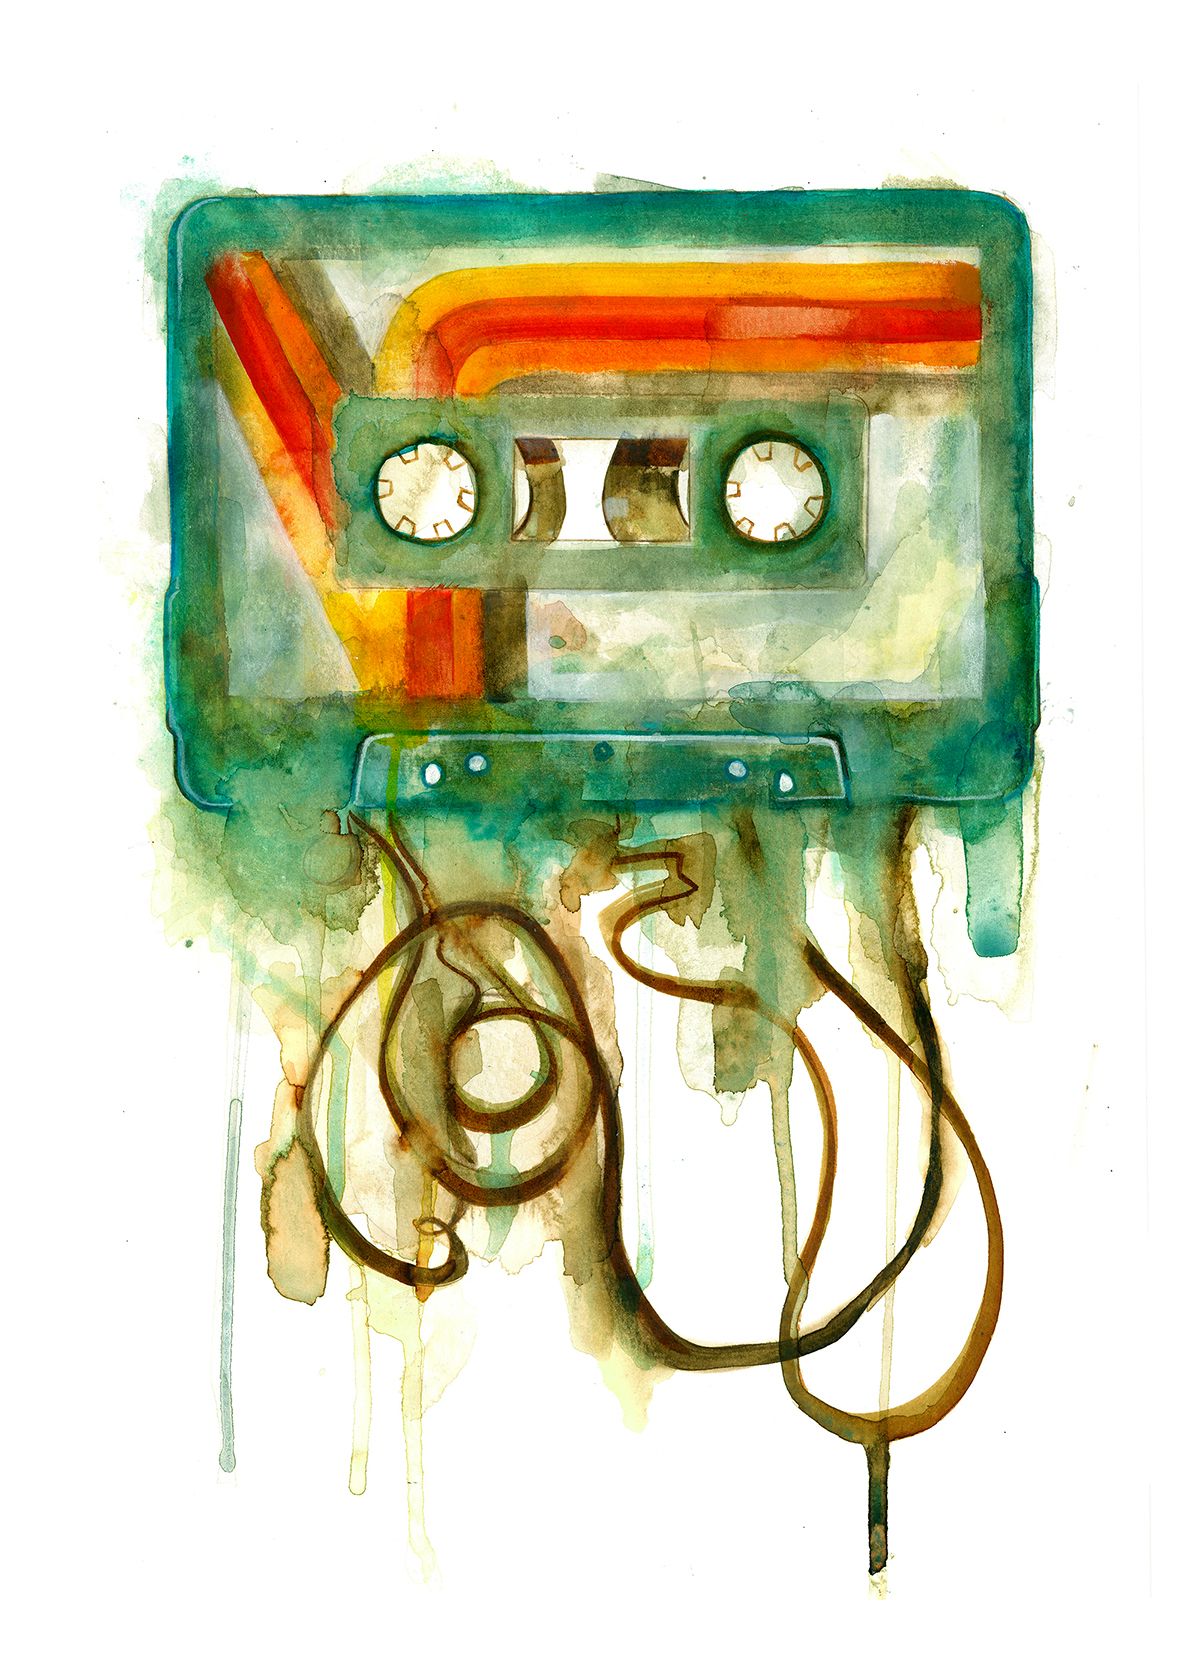 Cassette by Gavin Dobson